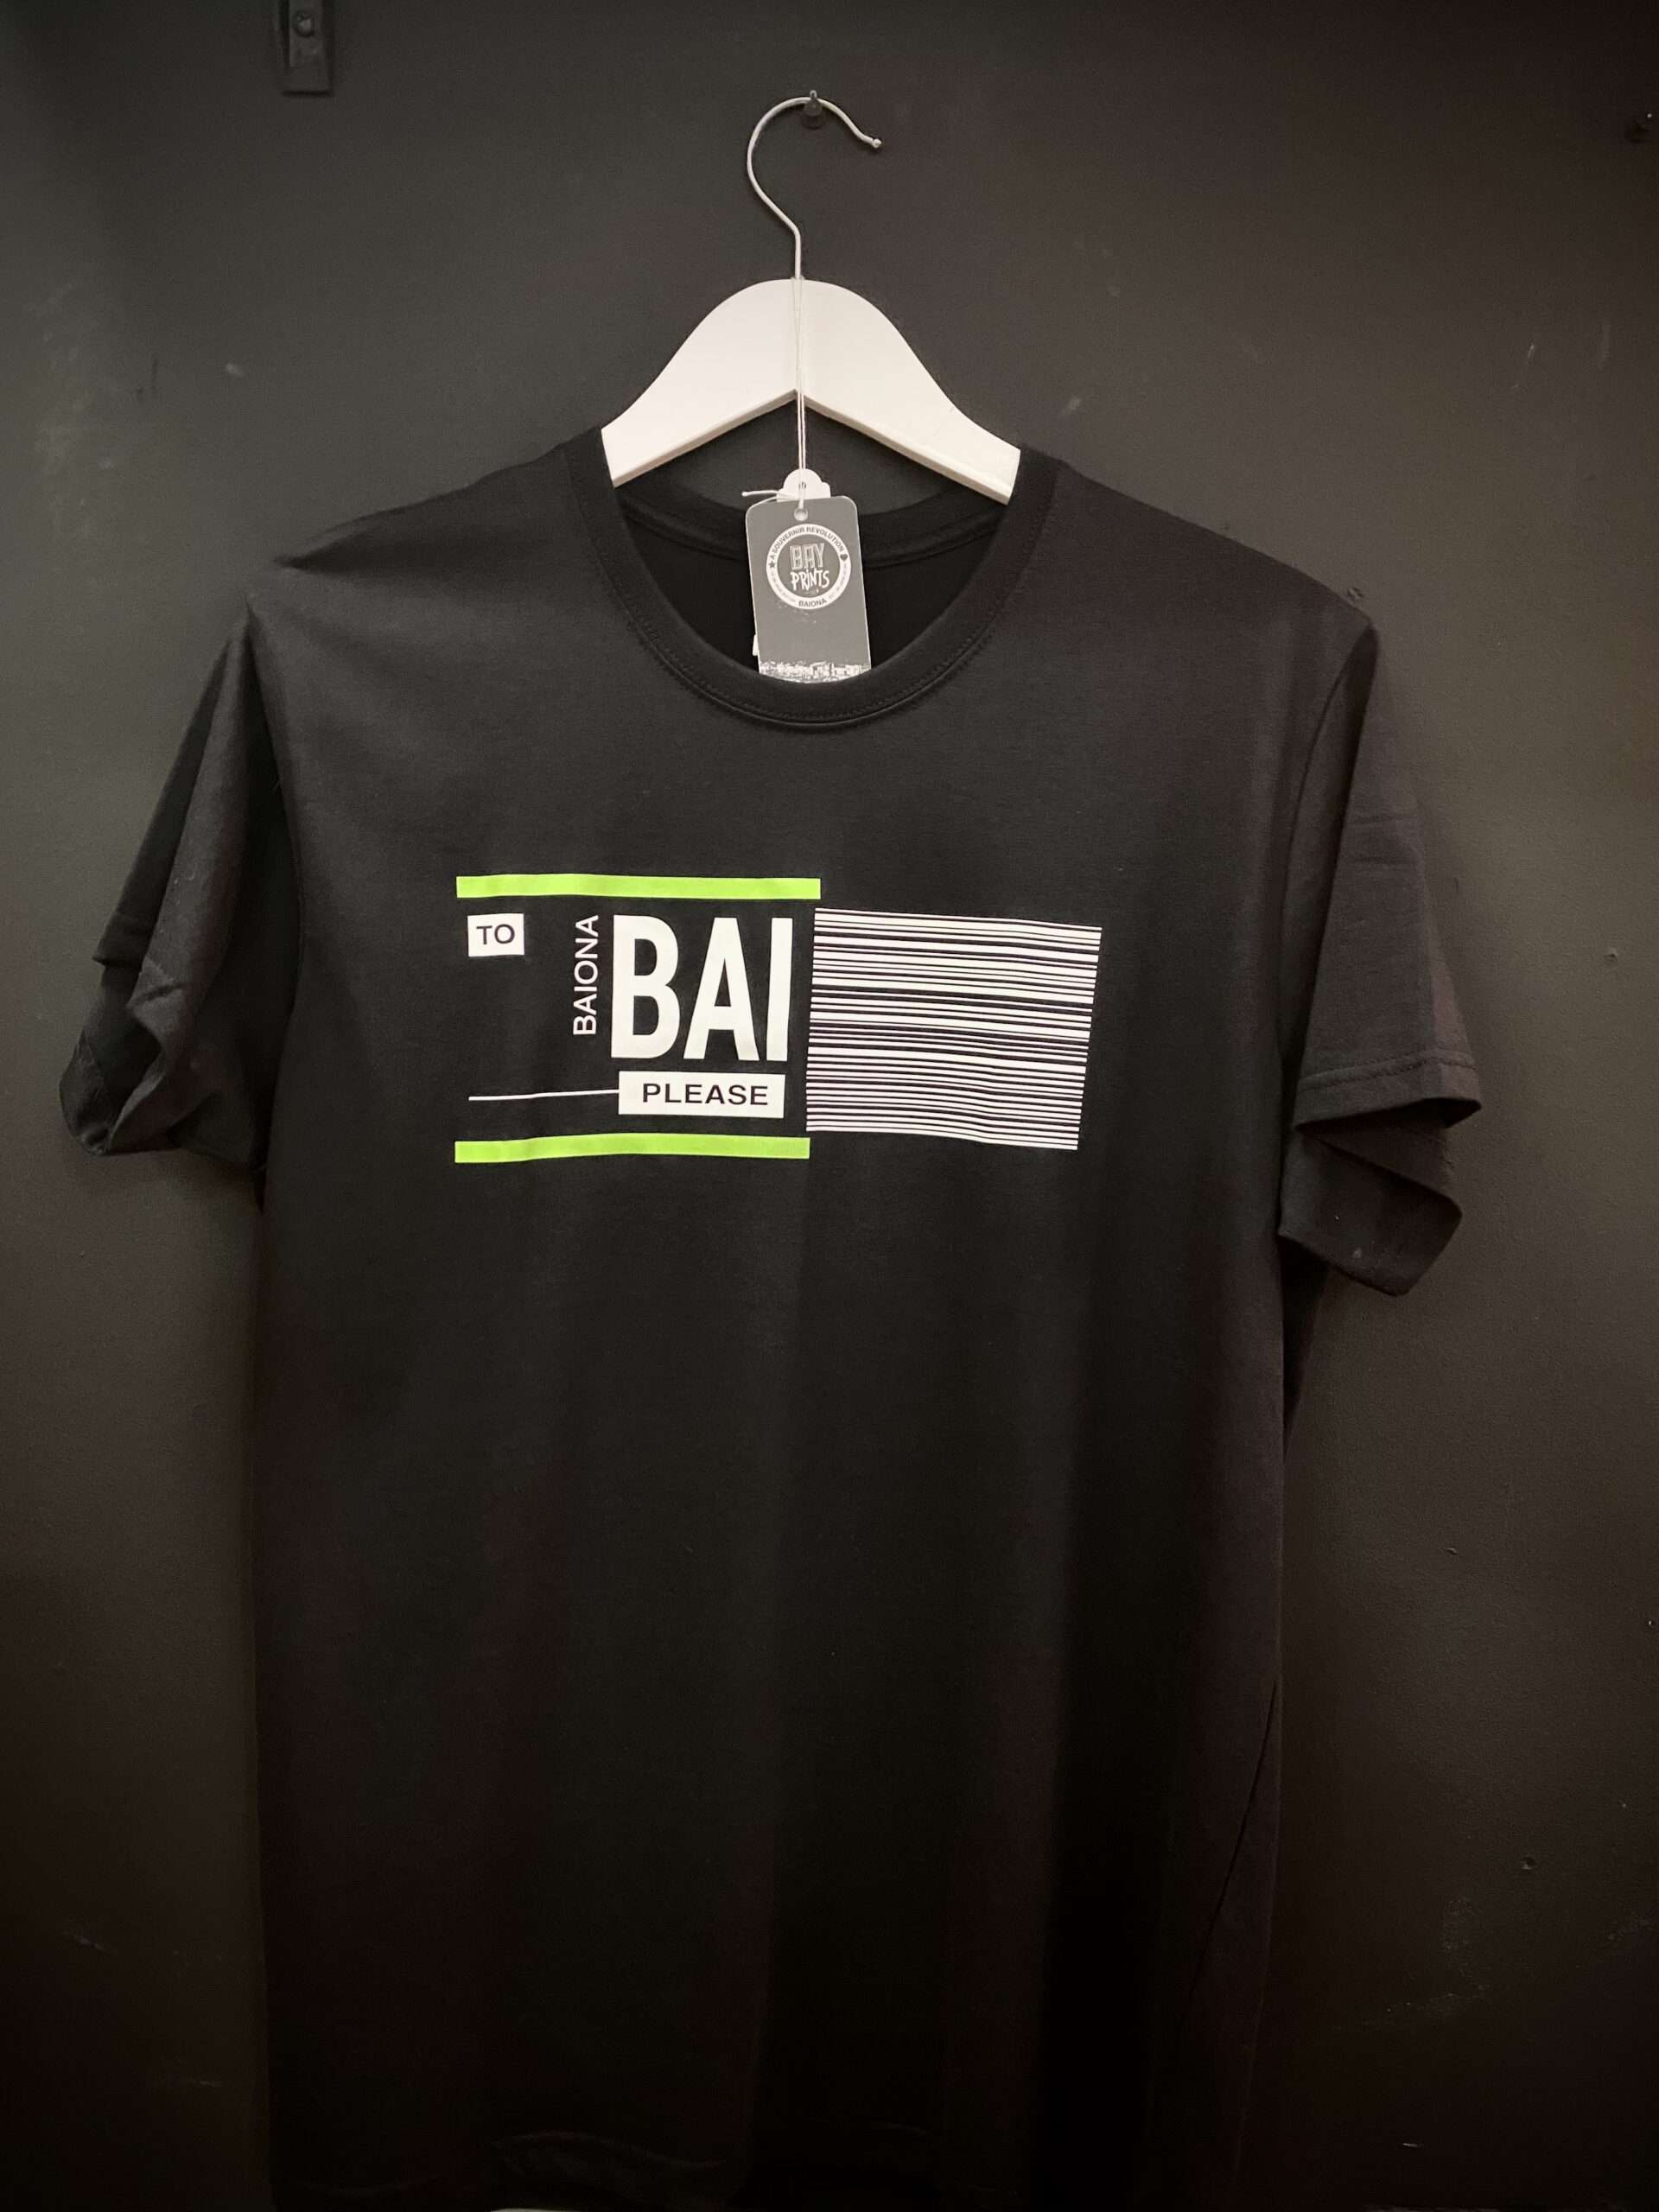 Camiseta Baiona código vuelo IATA. Camiseta algodón.